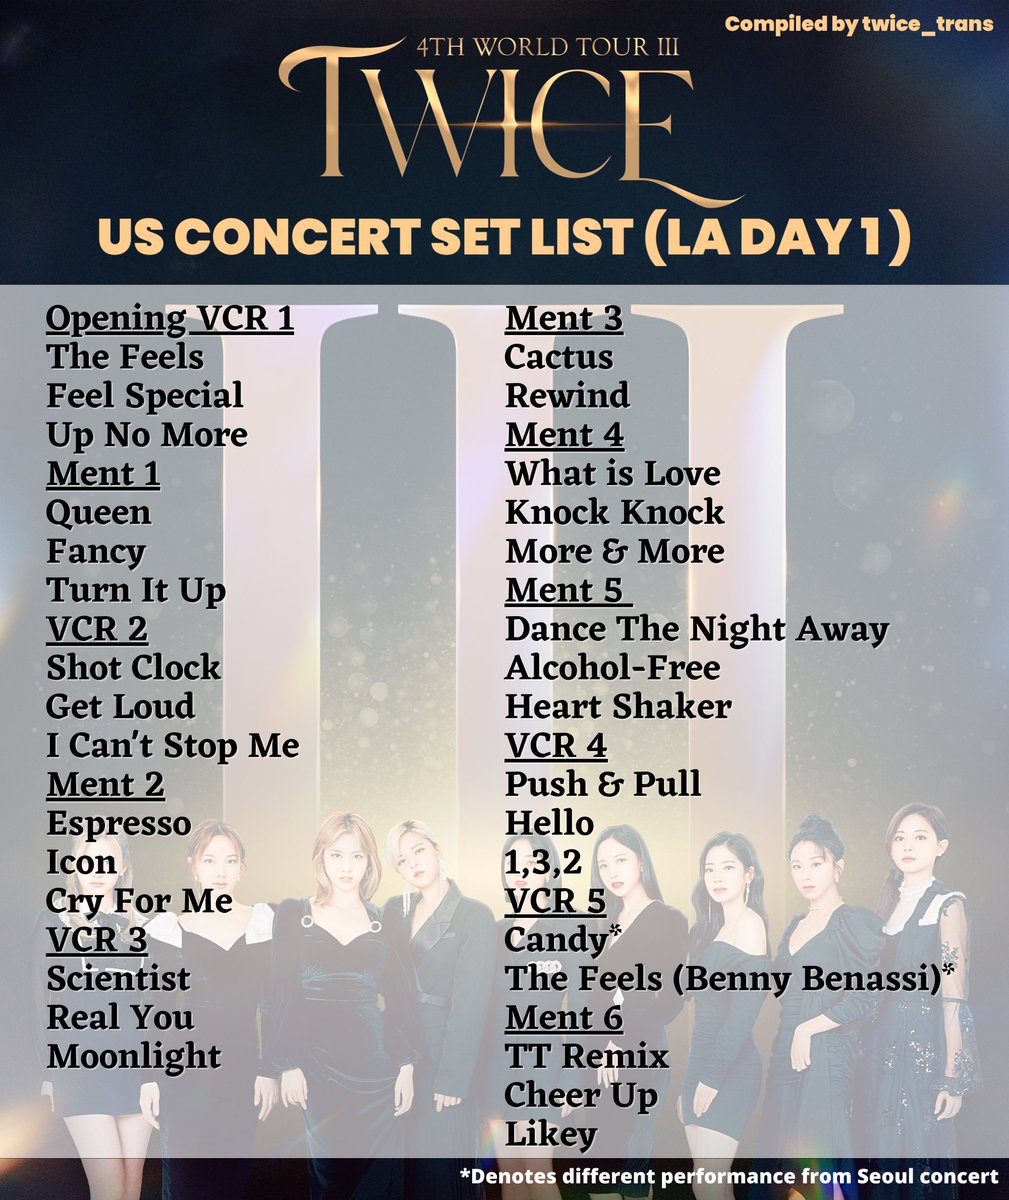 TWICE 4TH WORLD TOUR III SETLIST - SEUL DAY 2 - playlist by TWICE